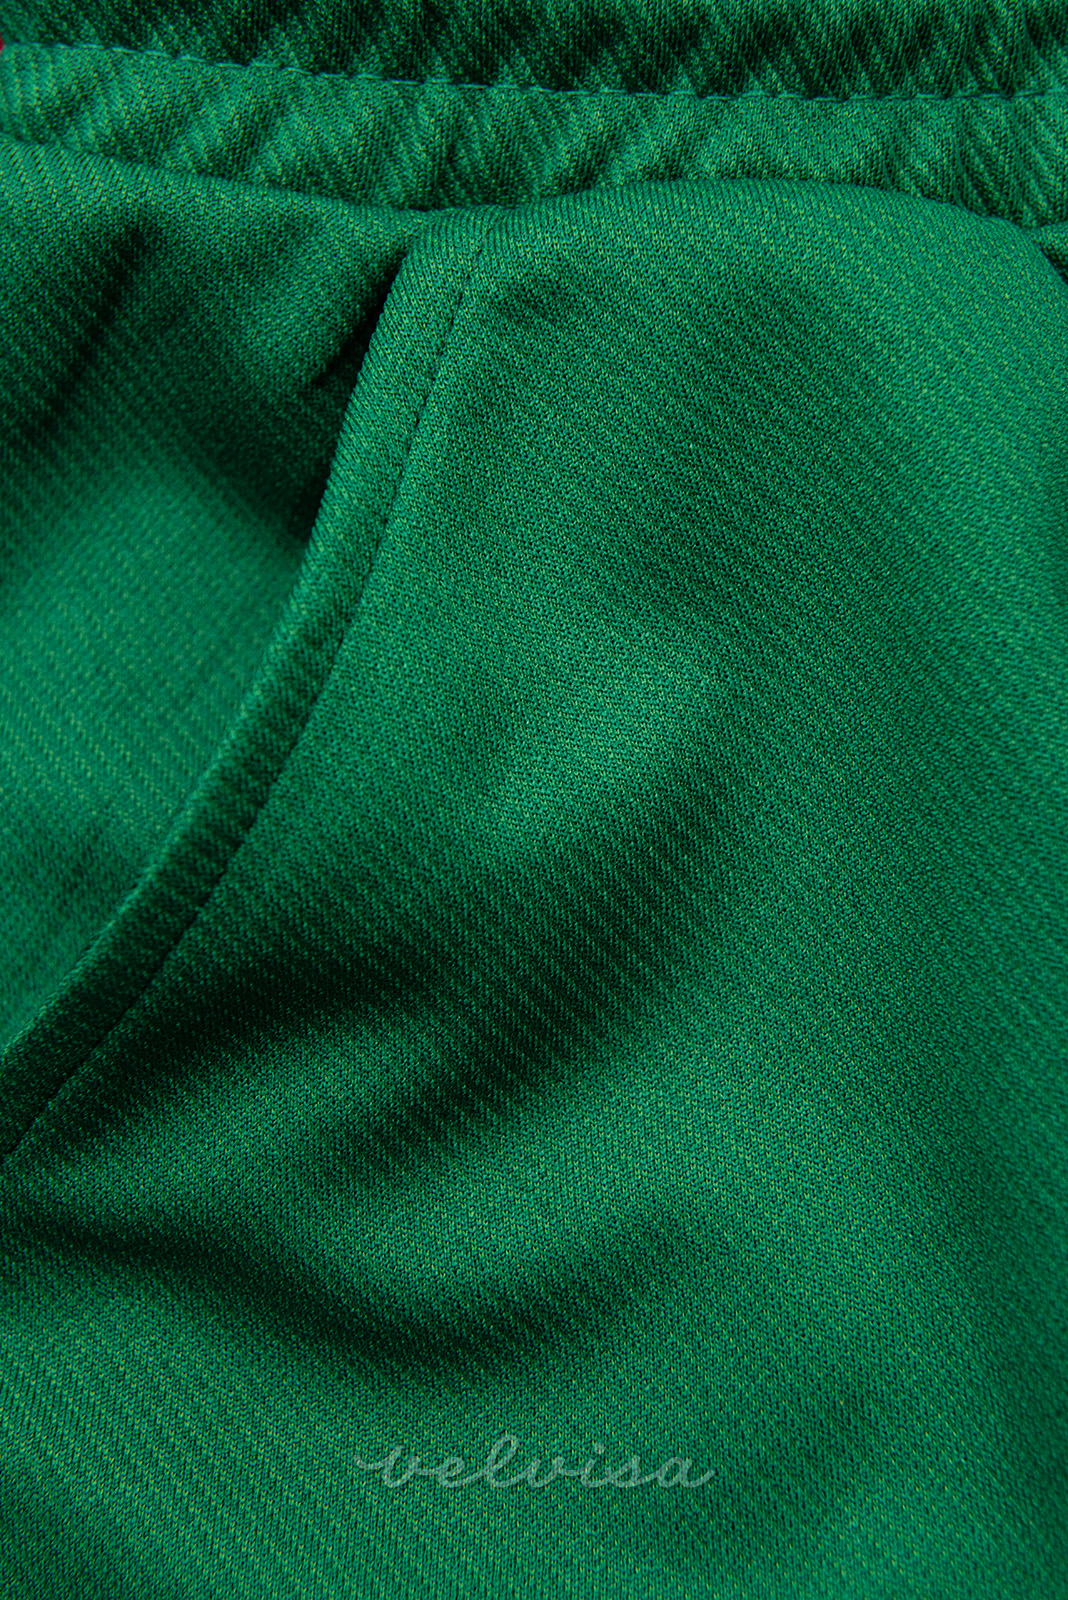 Zelene športne hlače z žepi